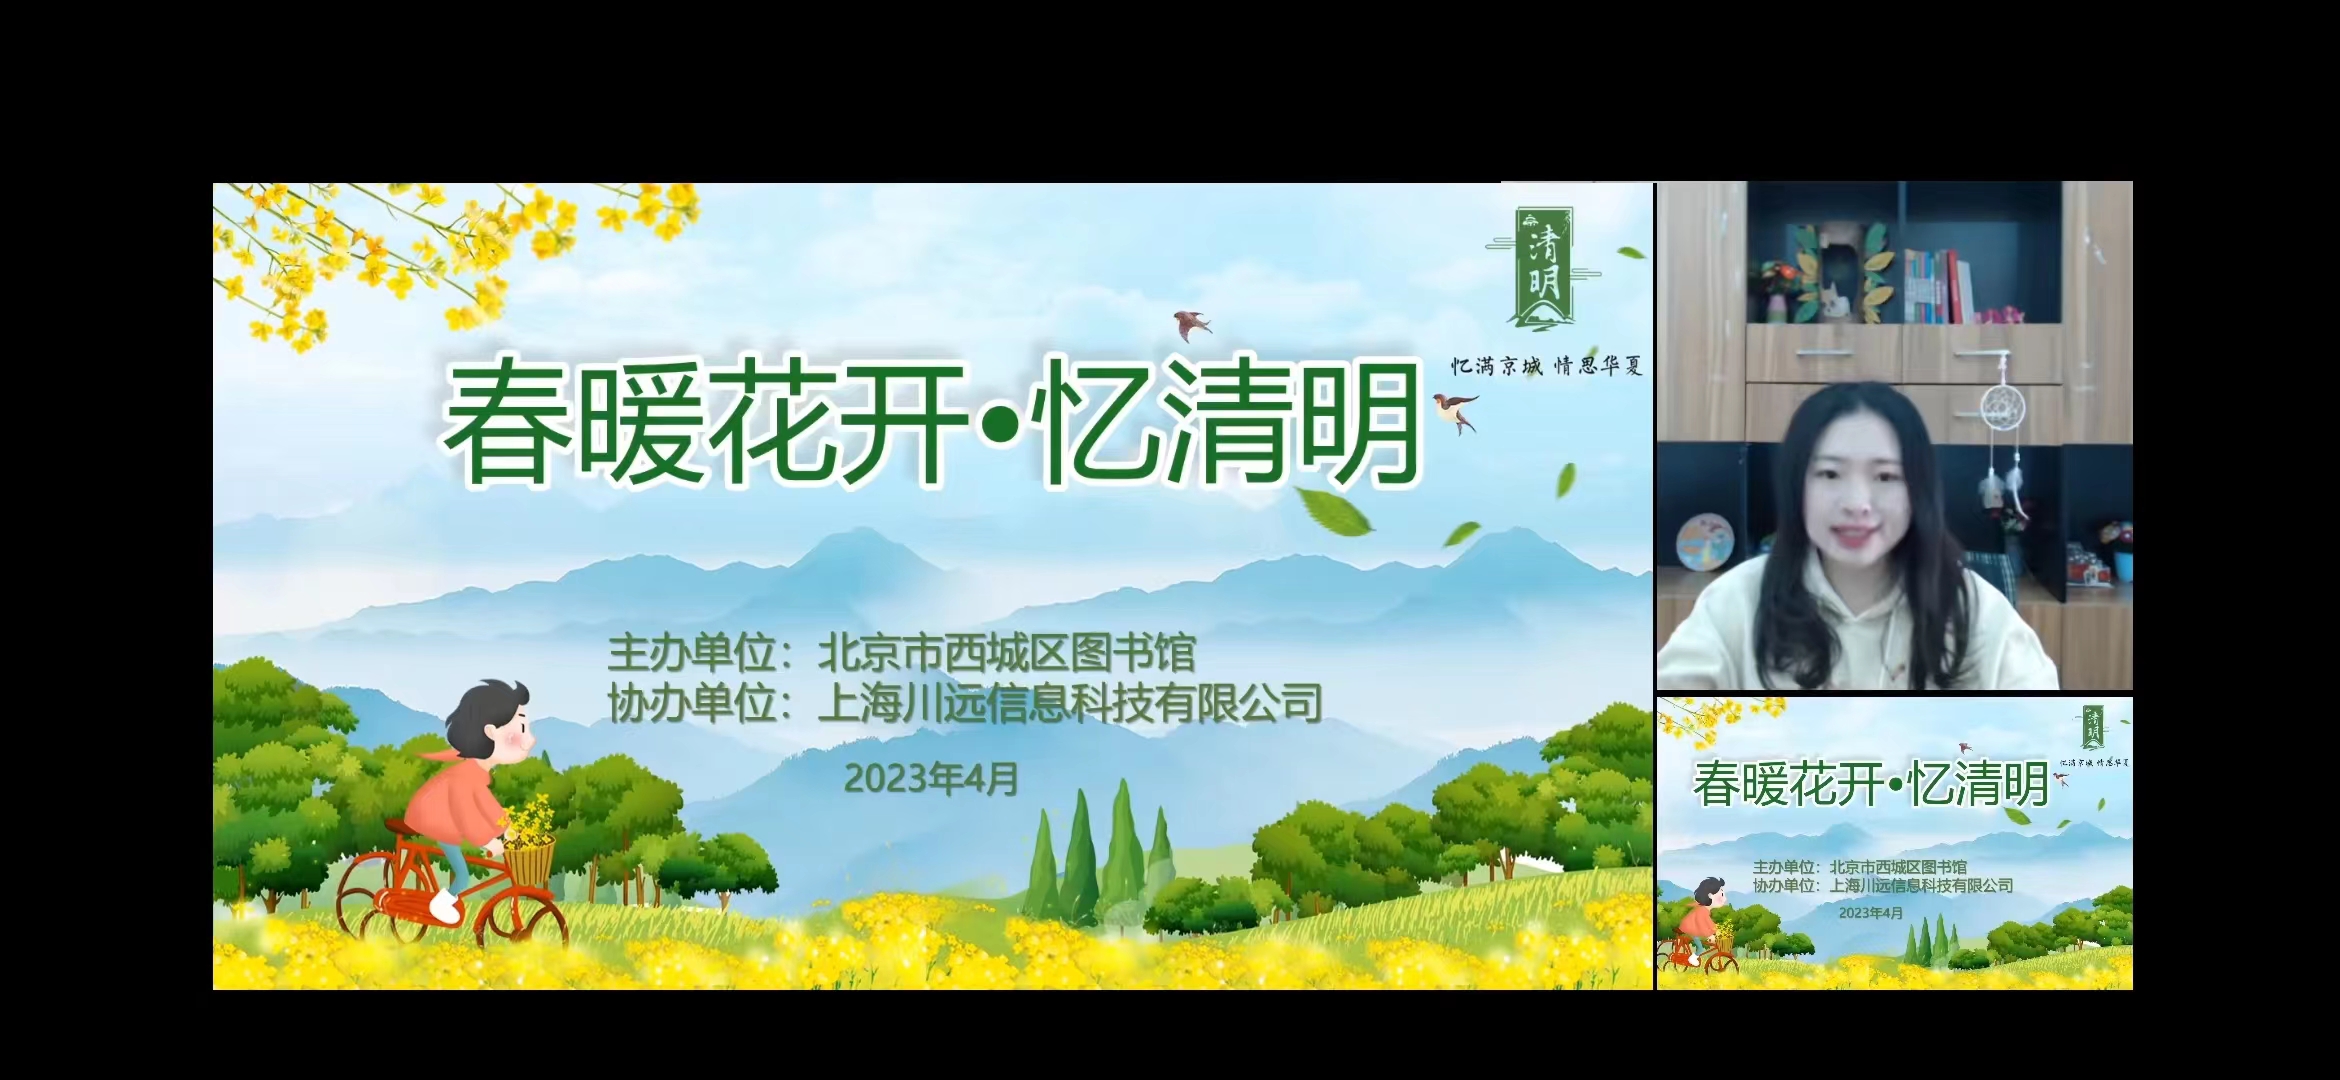 2023-04-04忆满京城  情思华夏  西图开展清明节系列主题活动3.jpg